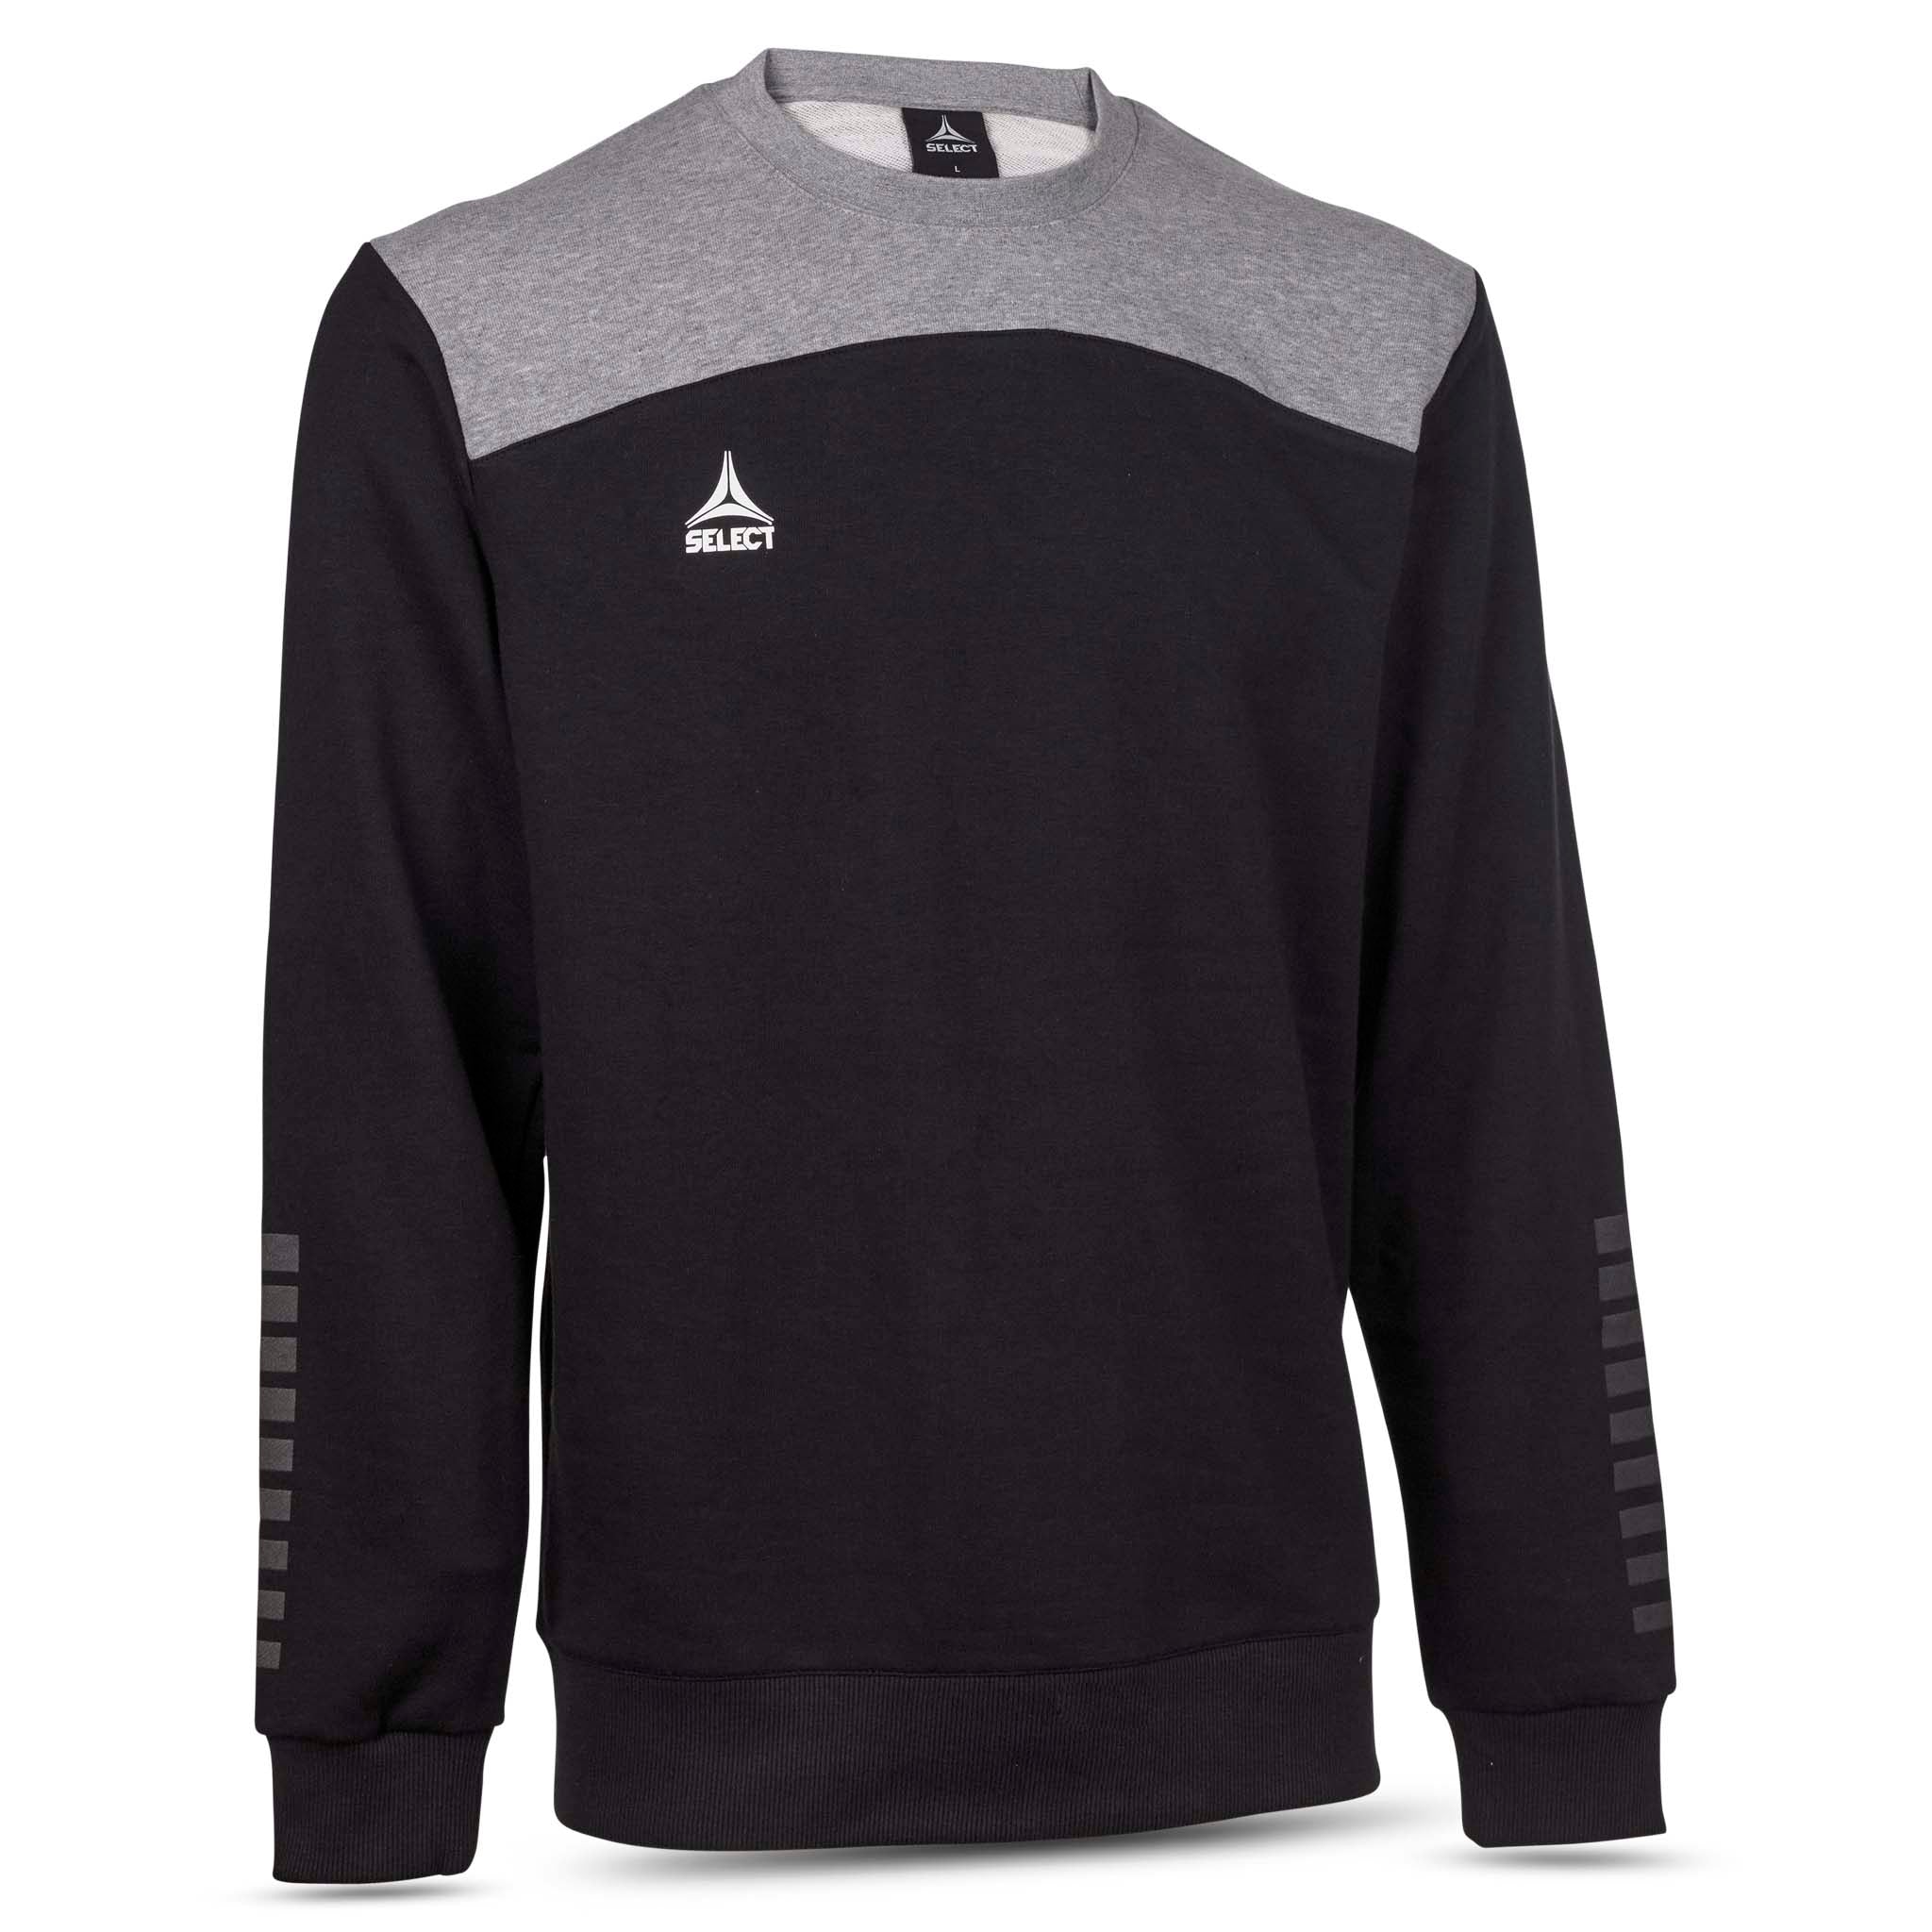 Oxford Sweatshirt - Barn #färg_svart/grå